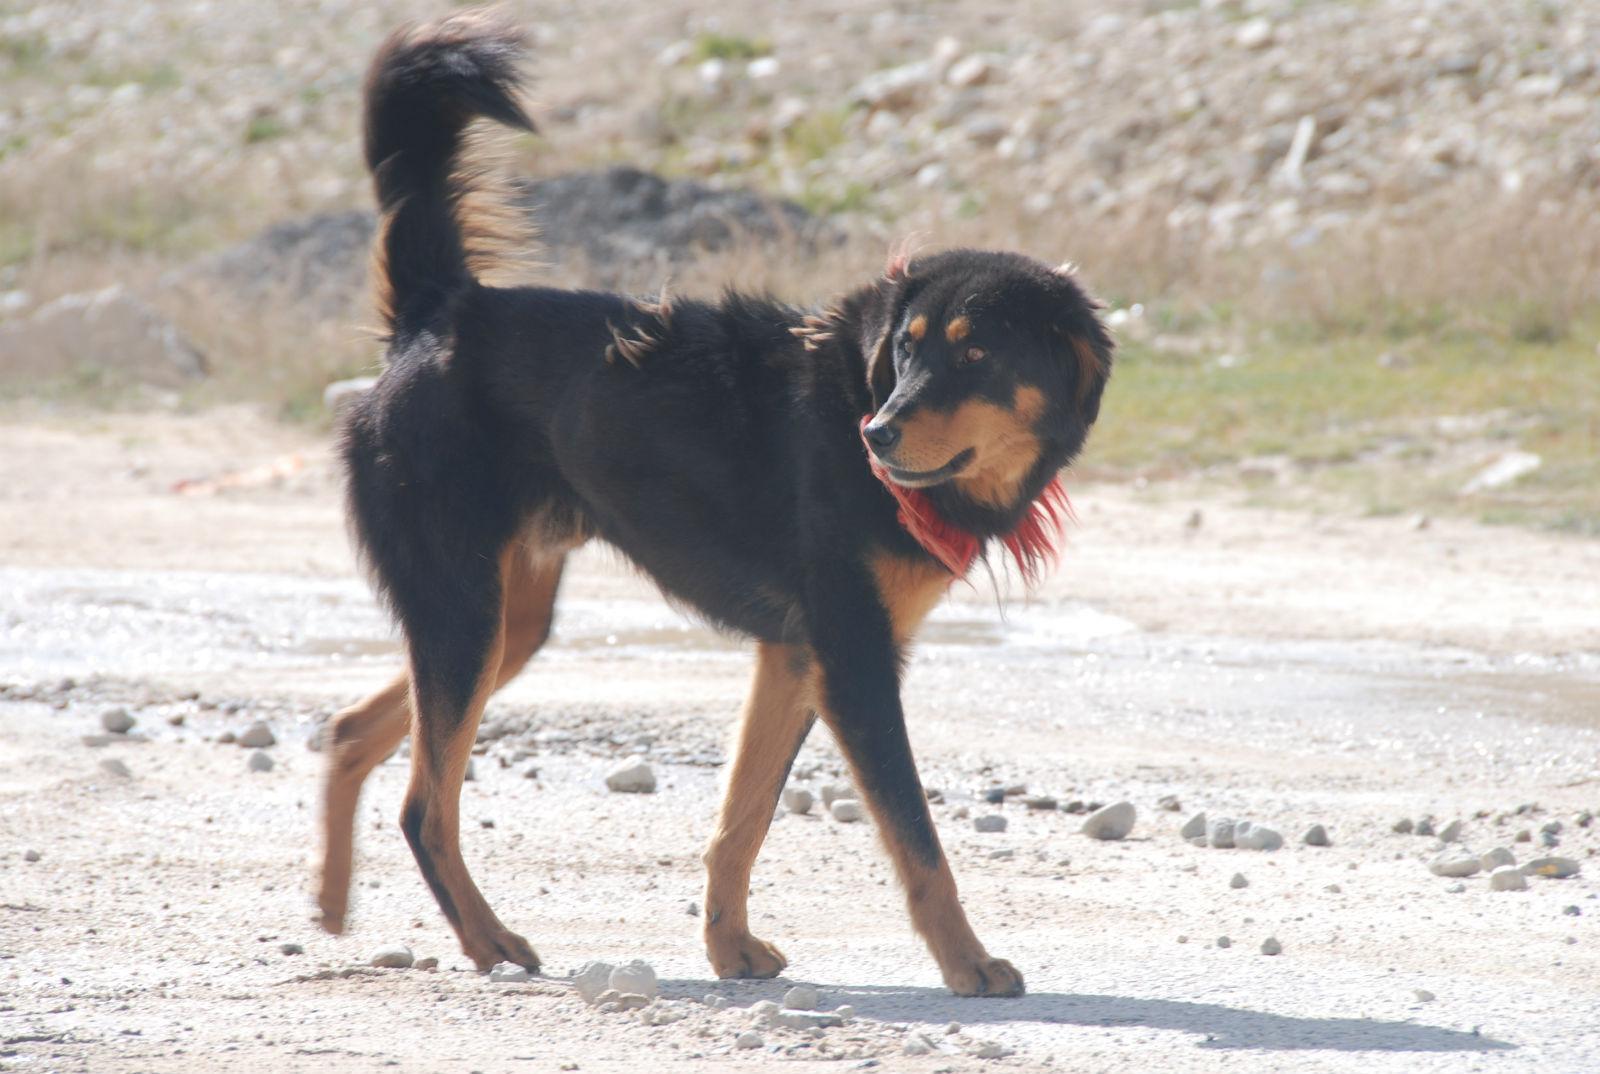 收藏 分享 编辑词条 藏狗原产中国西藏,也有人说其祖先是马士提夫犬